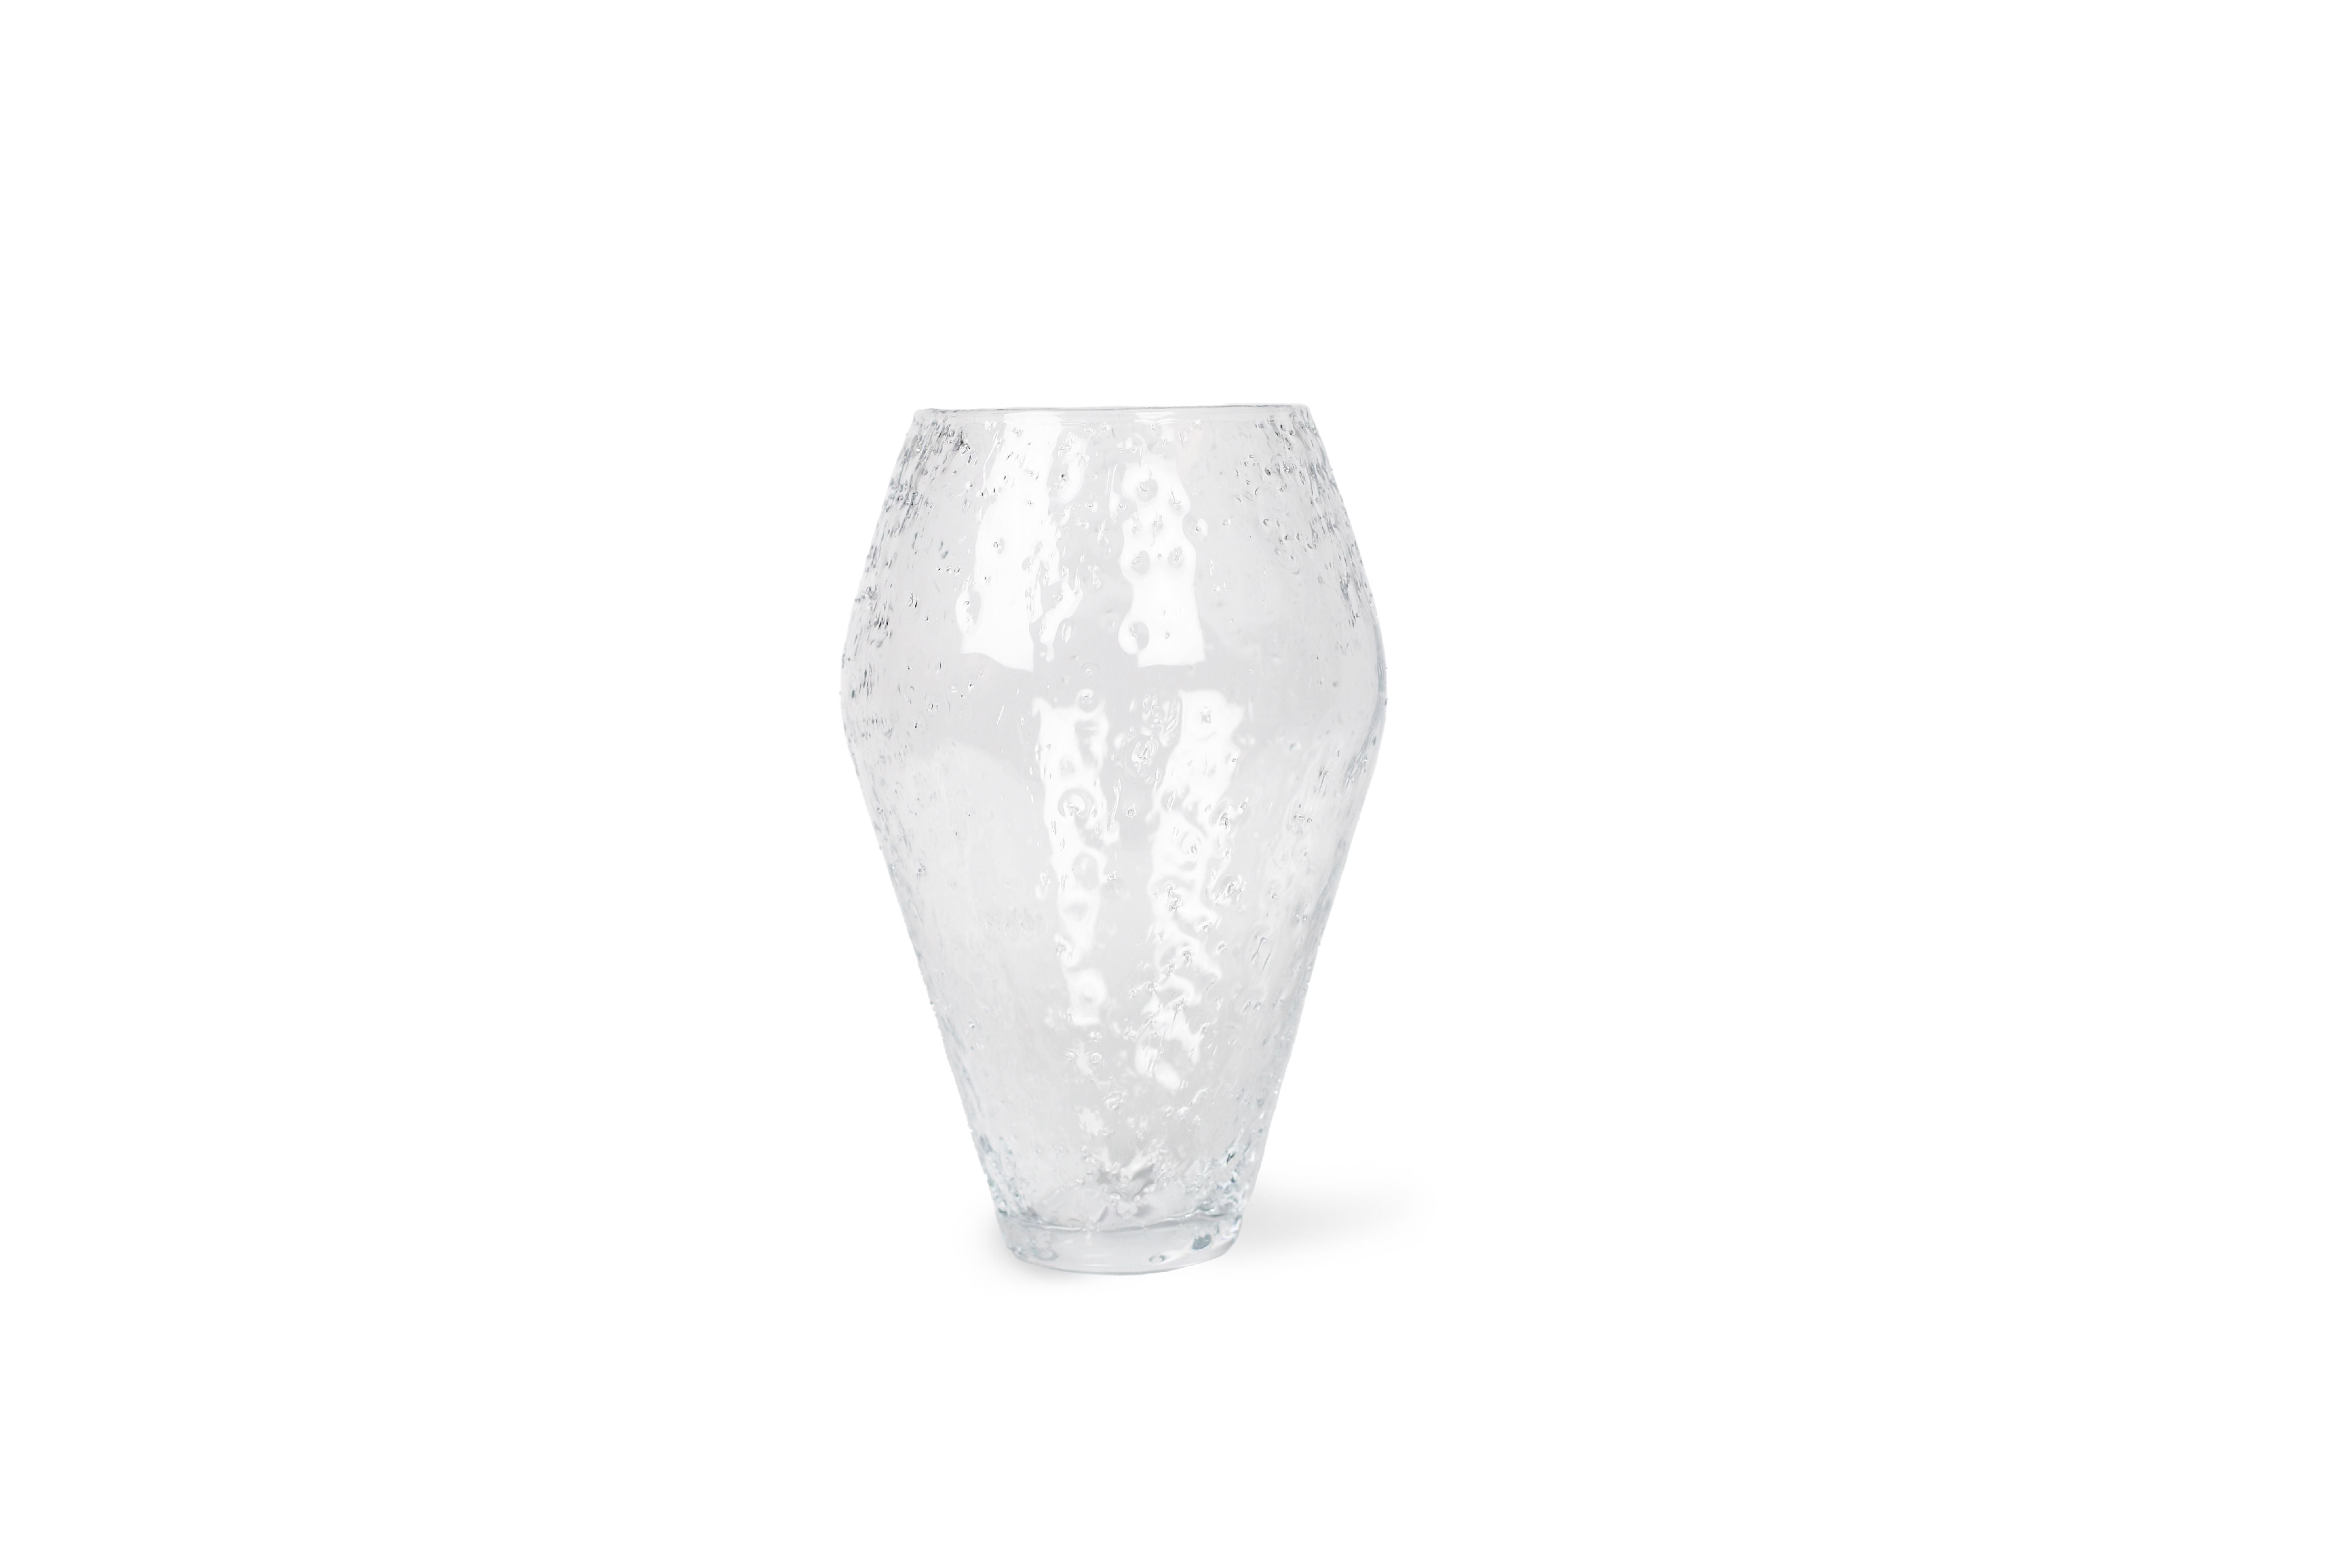 Kolekcja RO zmiażdżona szklana wazon, duży, przezroczysty